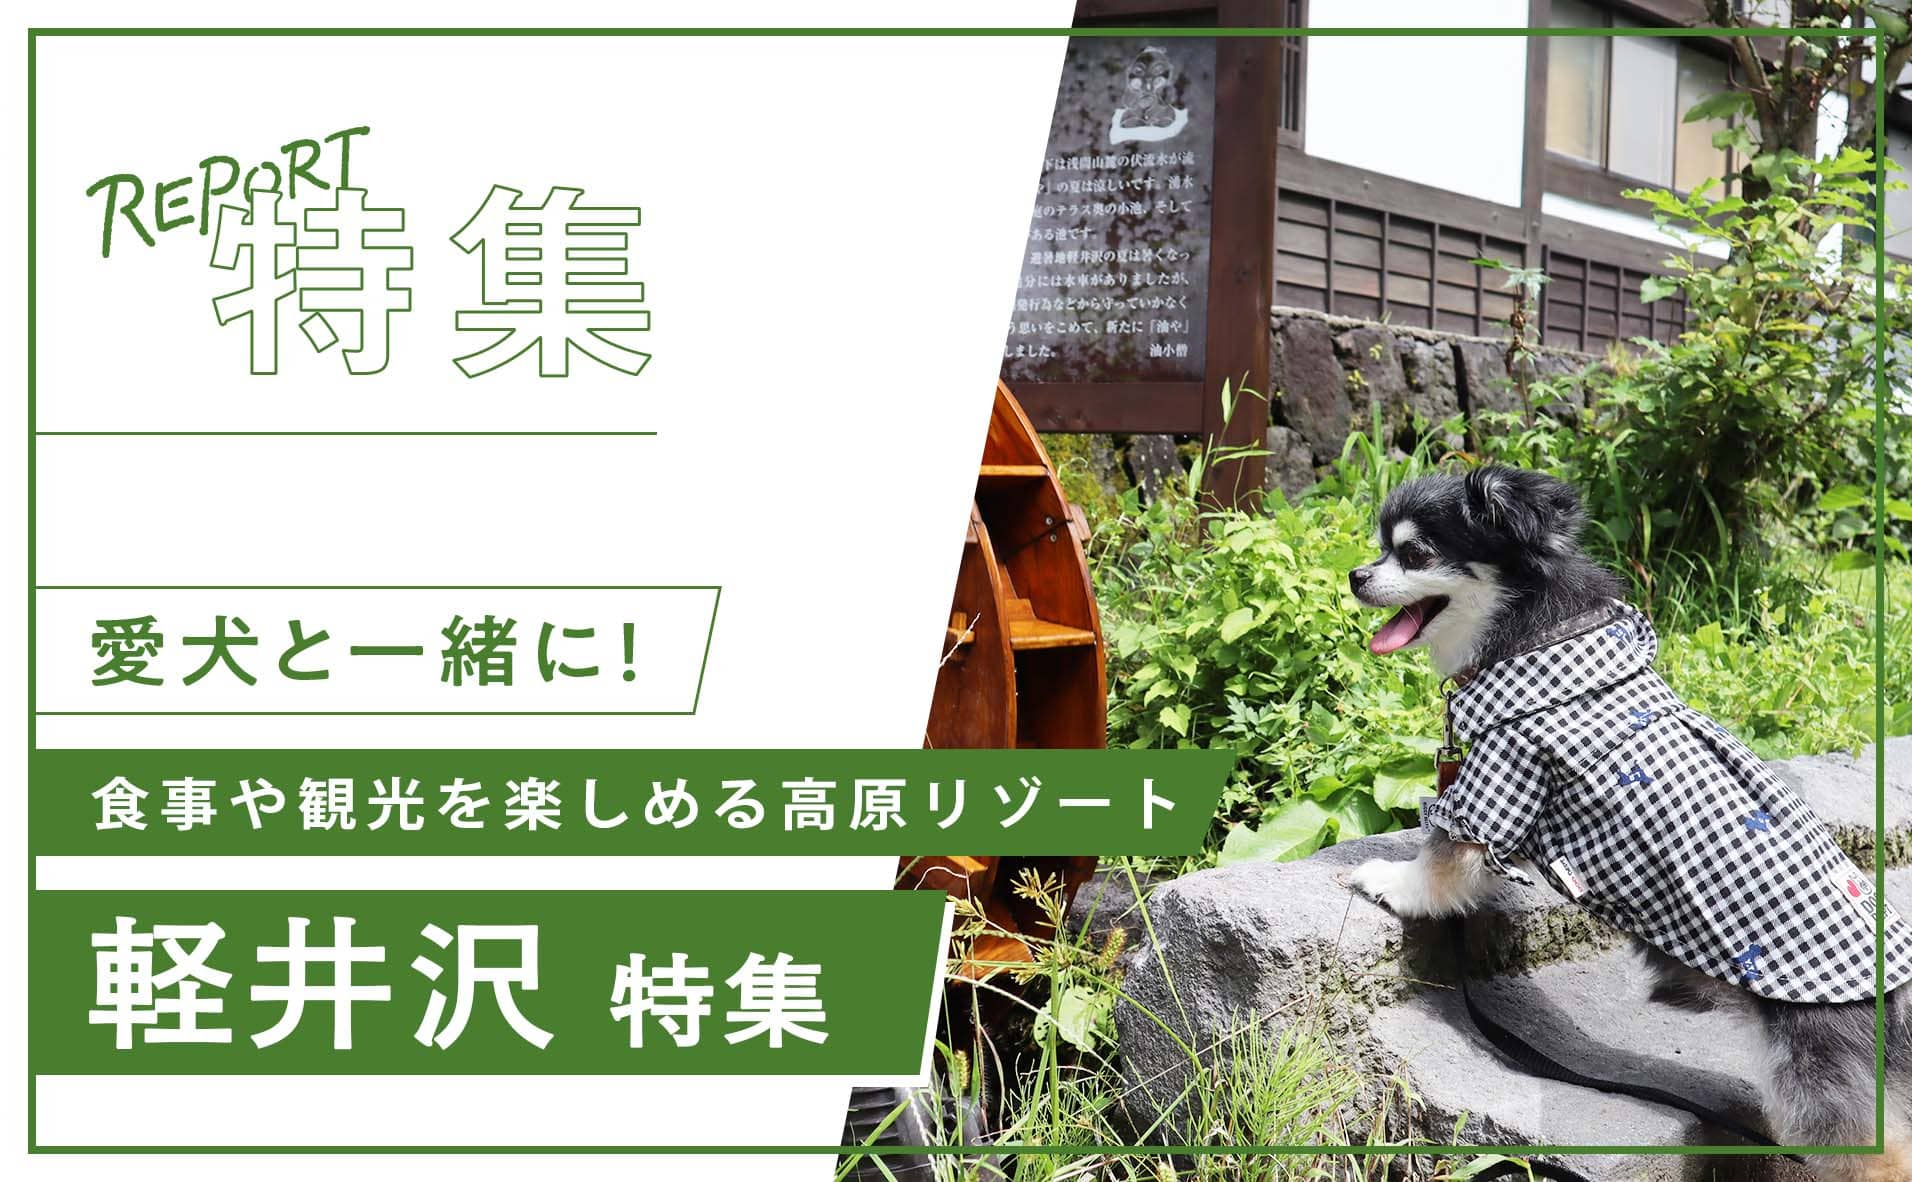 【軽井沢】犬連れで食事や観光を楽しめる軽井沢おすすめスポットを紹介